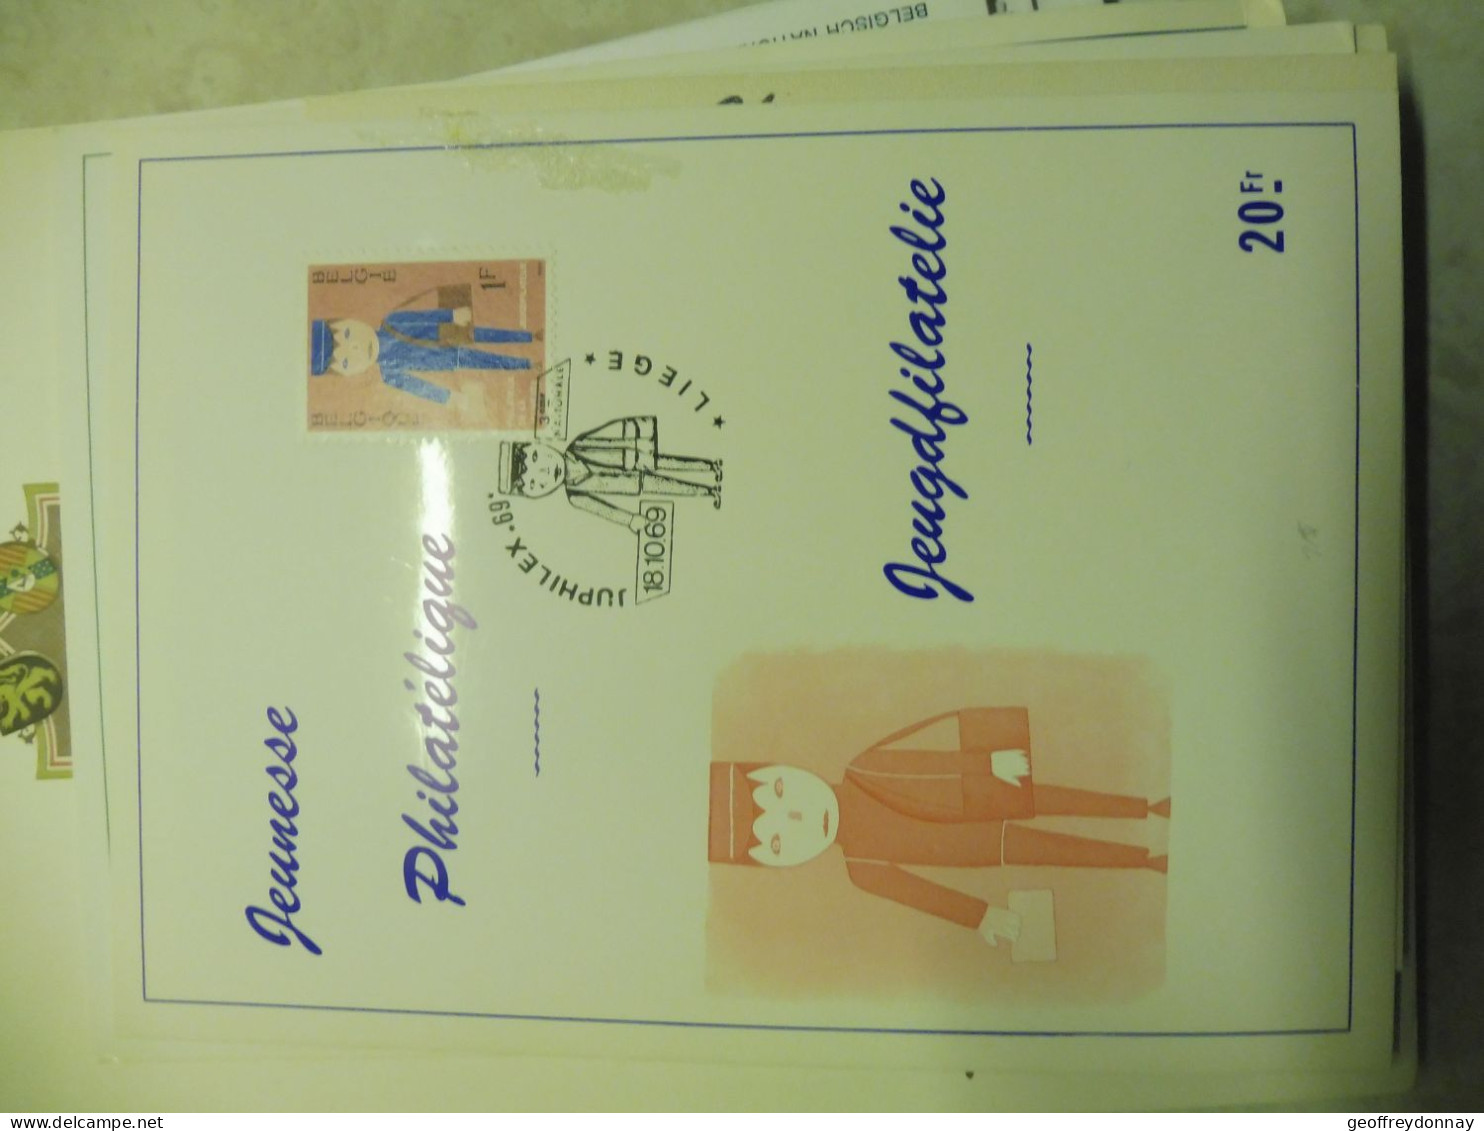 Belgique Belgie  Souvenir 1511 Gestempelt / Oblitéré Liege  Illustrée 1969  Facteur - Post Office Leaflets